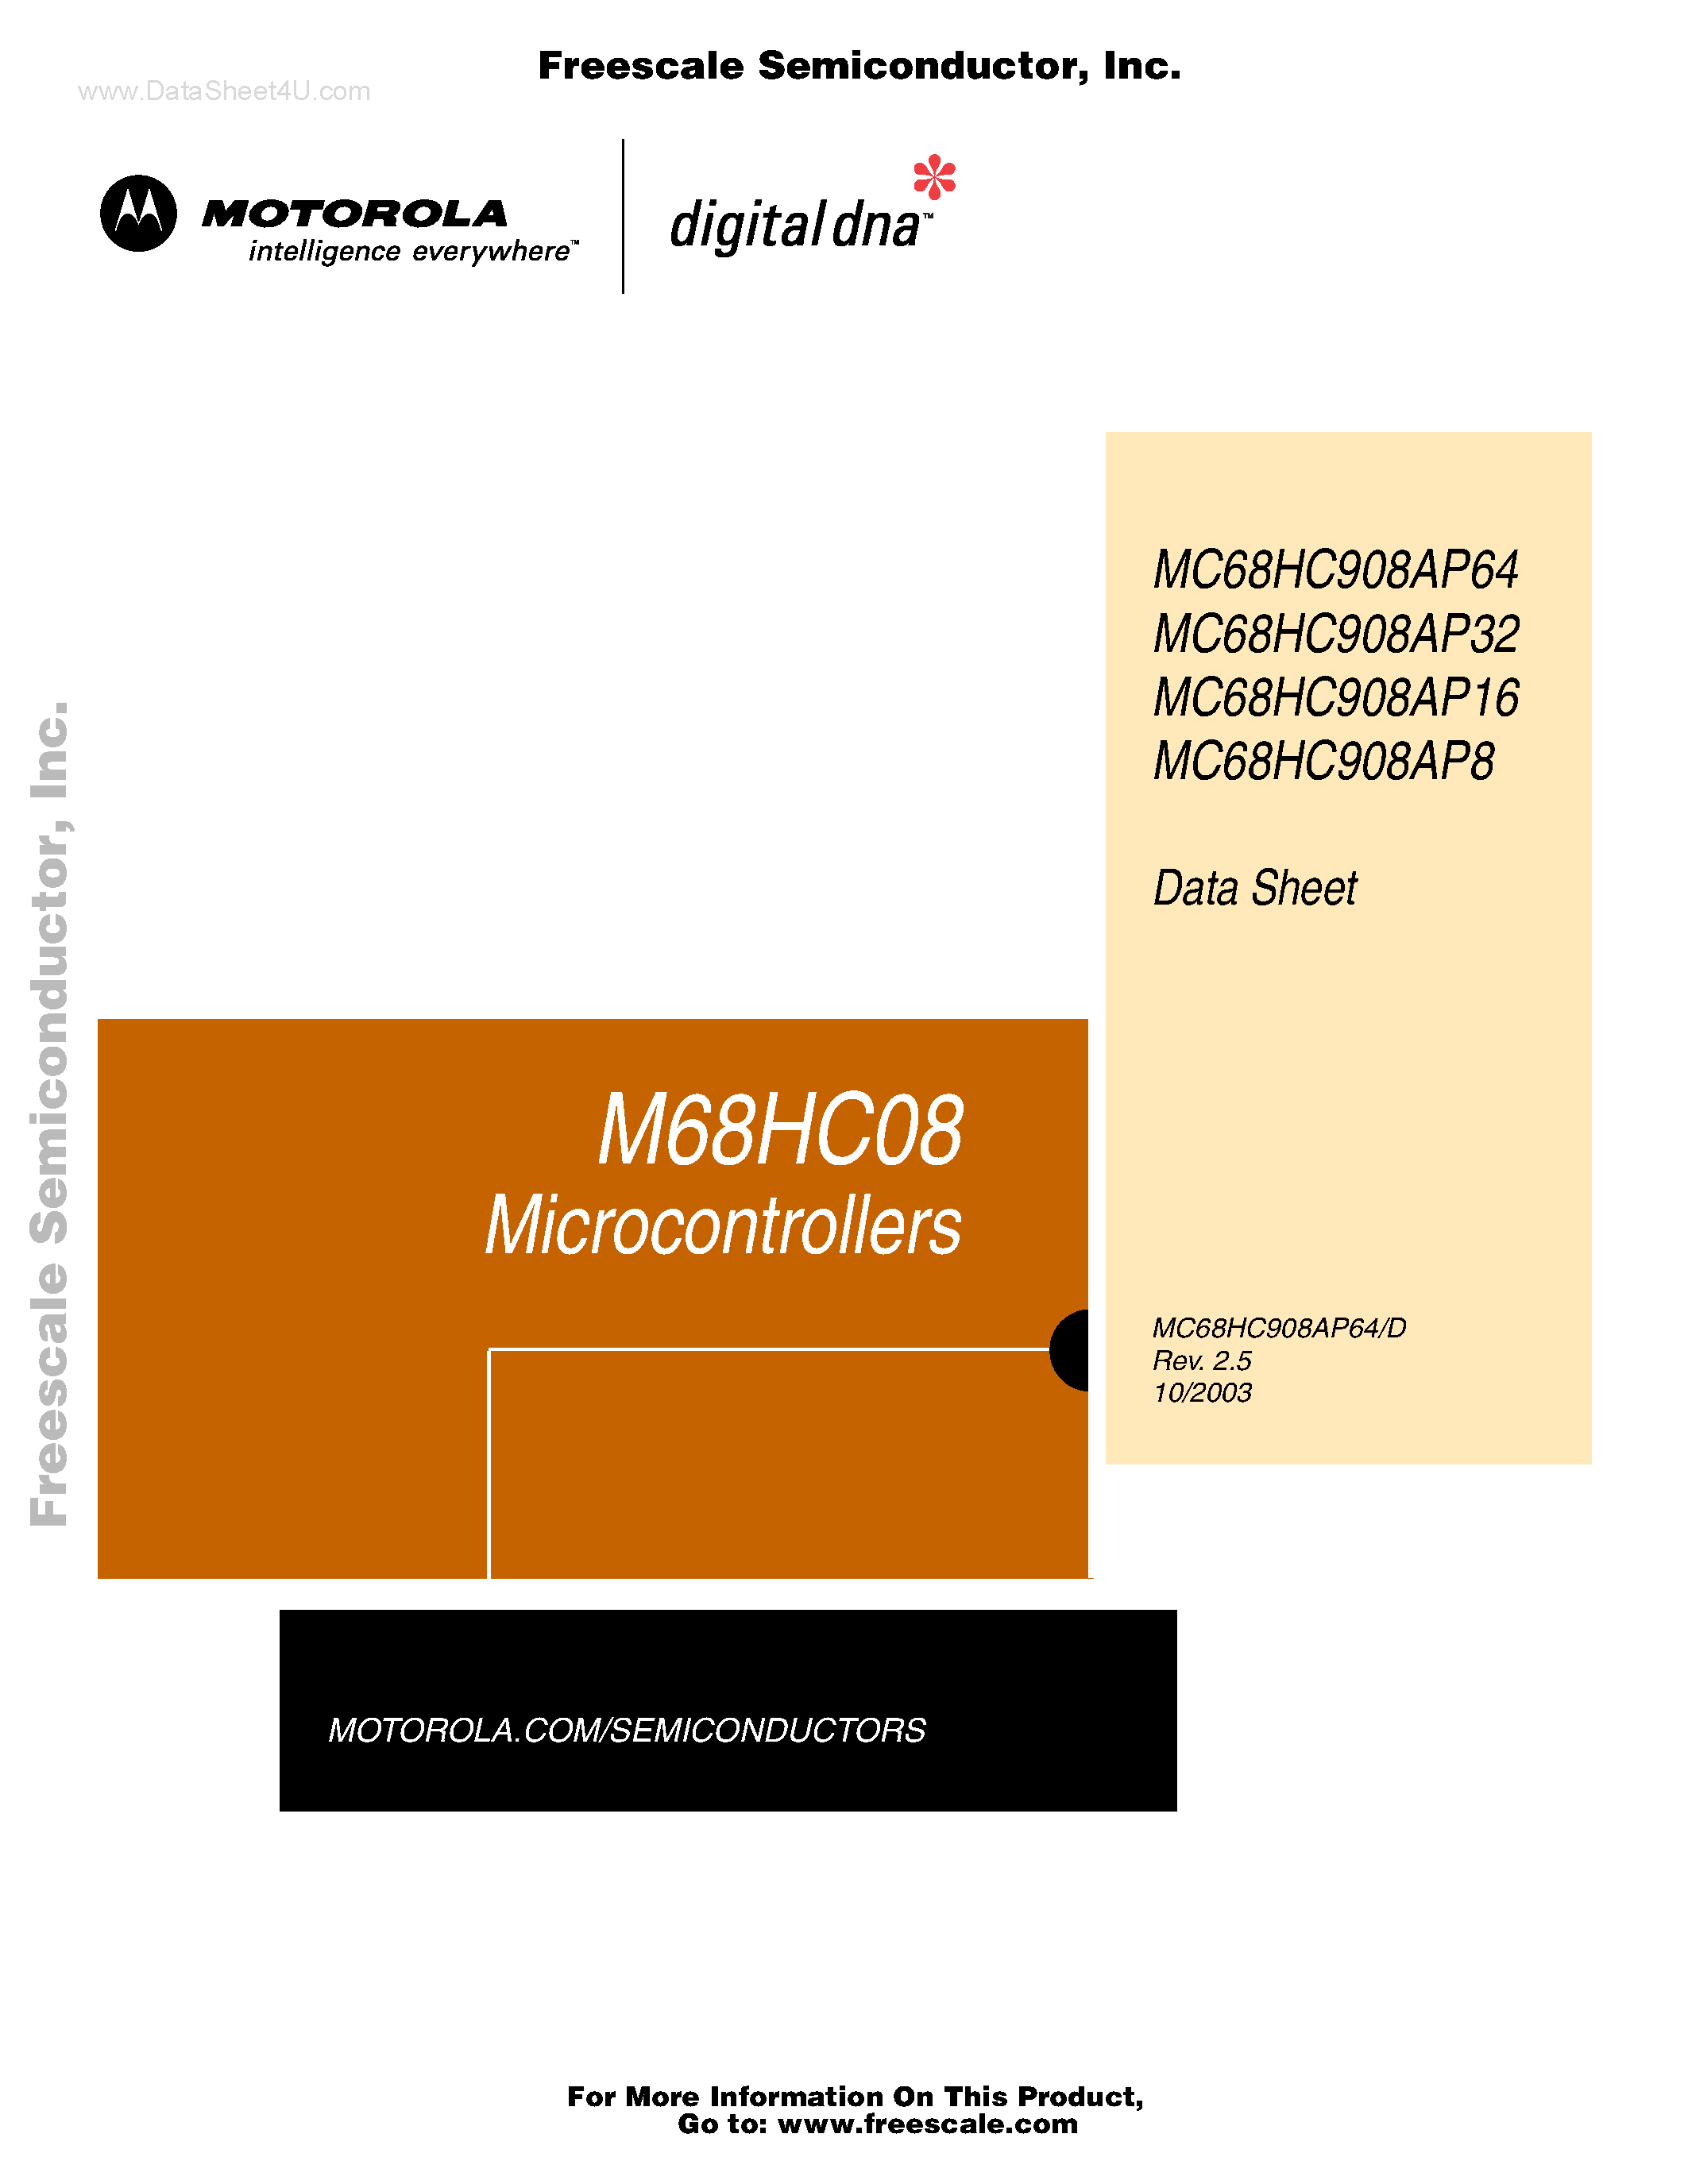 Даташит MC68HC908AP16 - (MC68HC908AP8 - MC68HC908AP64) Microcontrollers страница 1